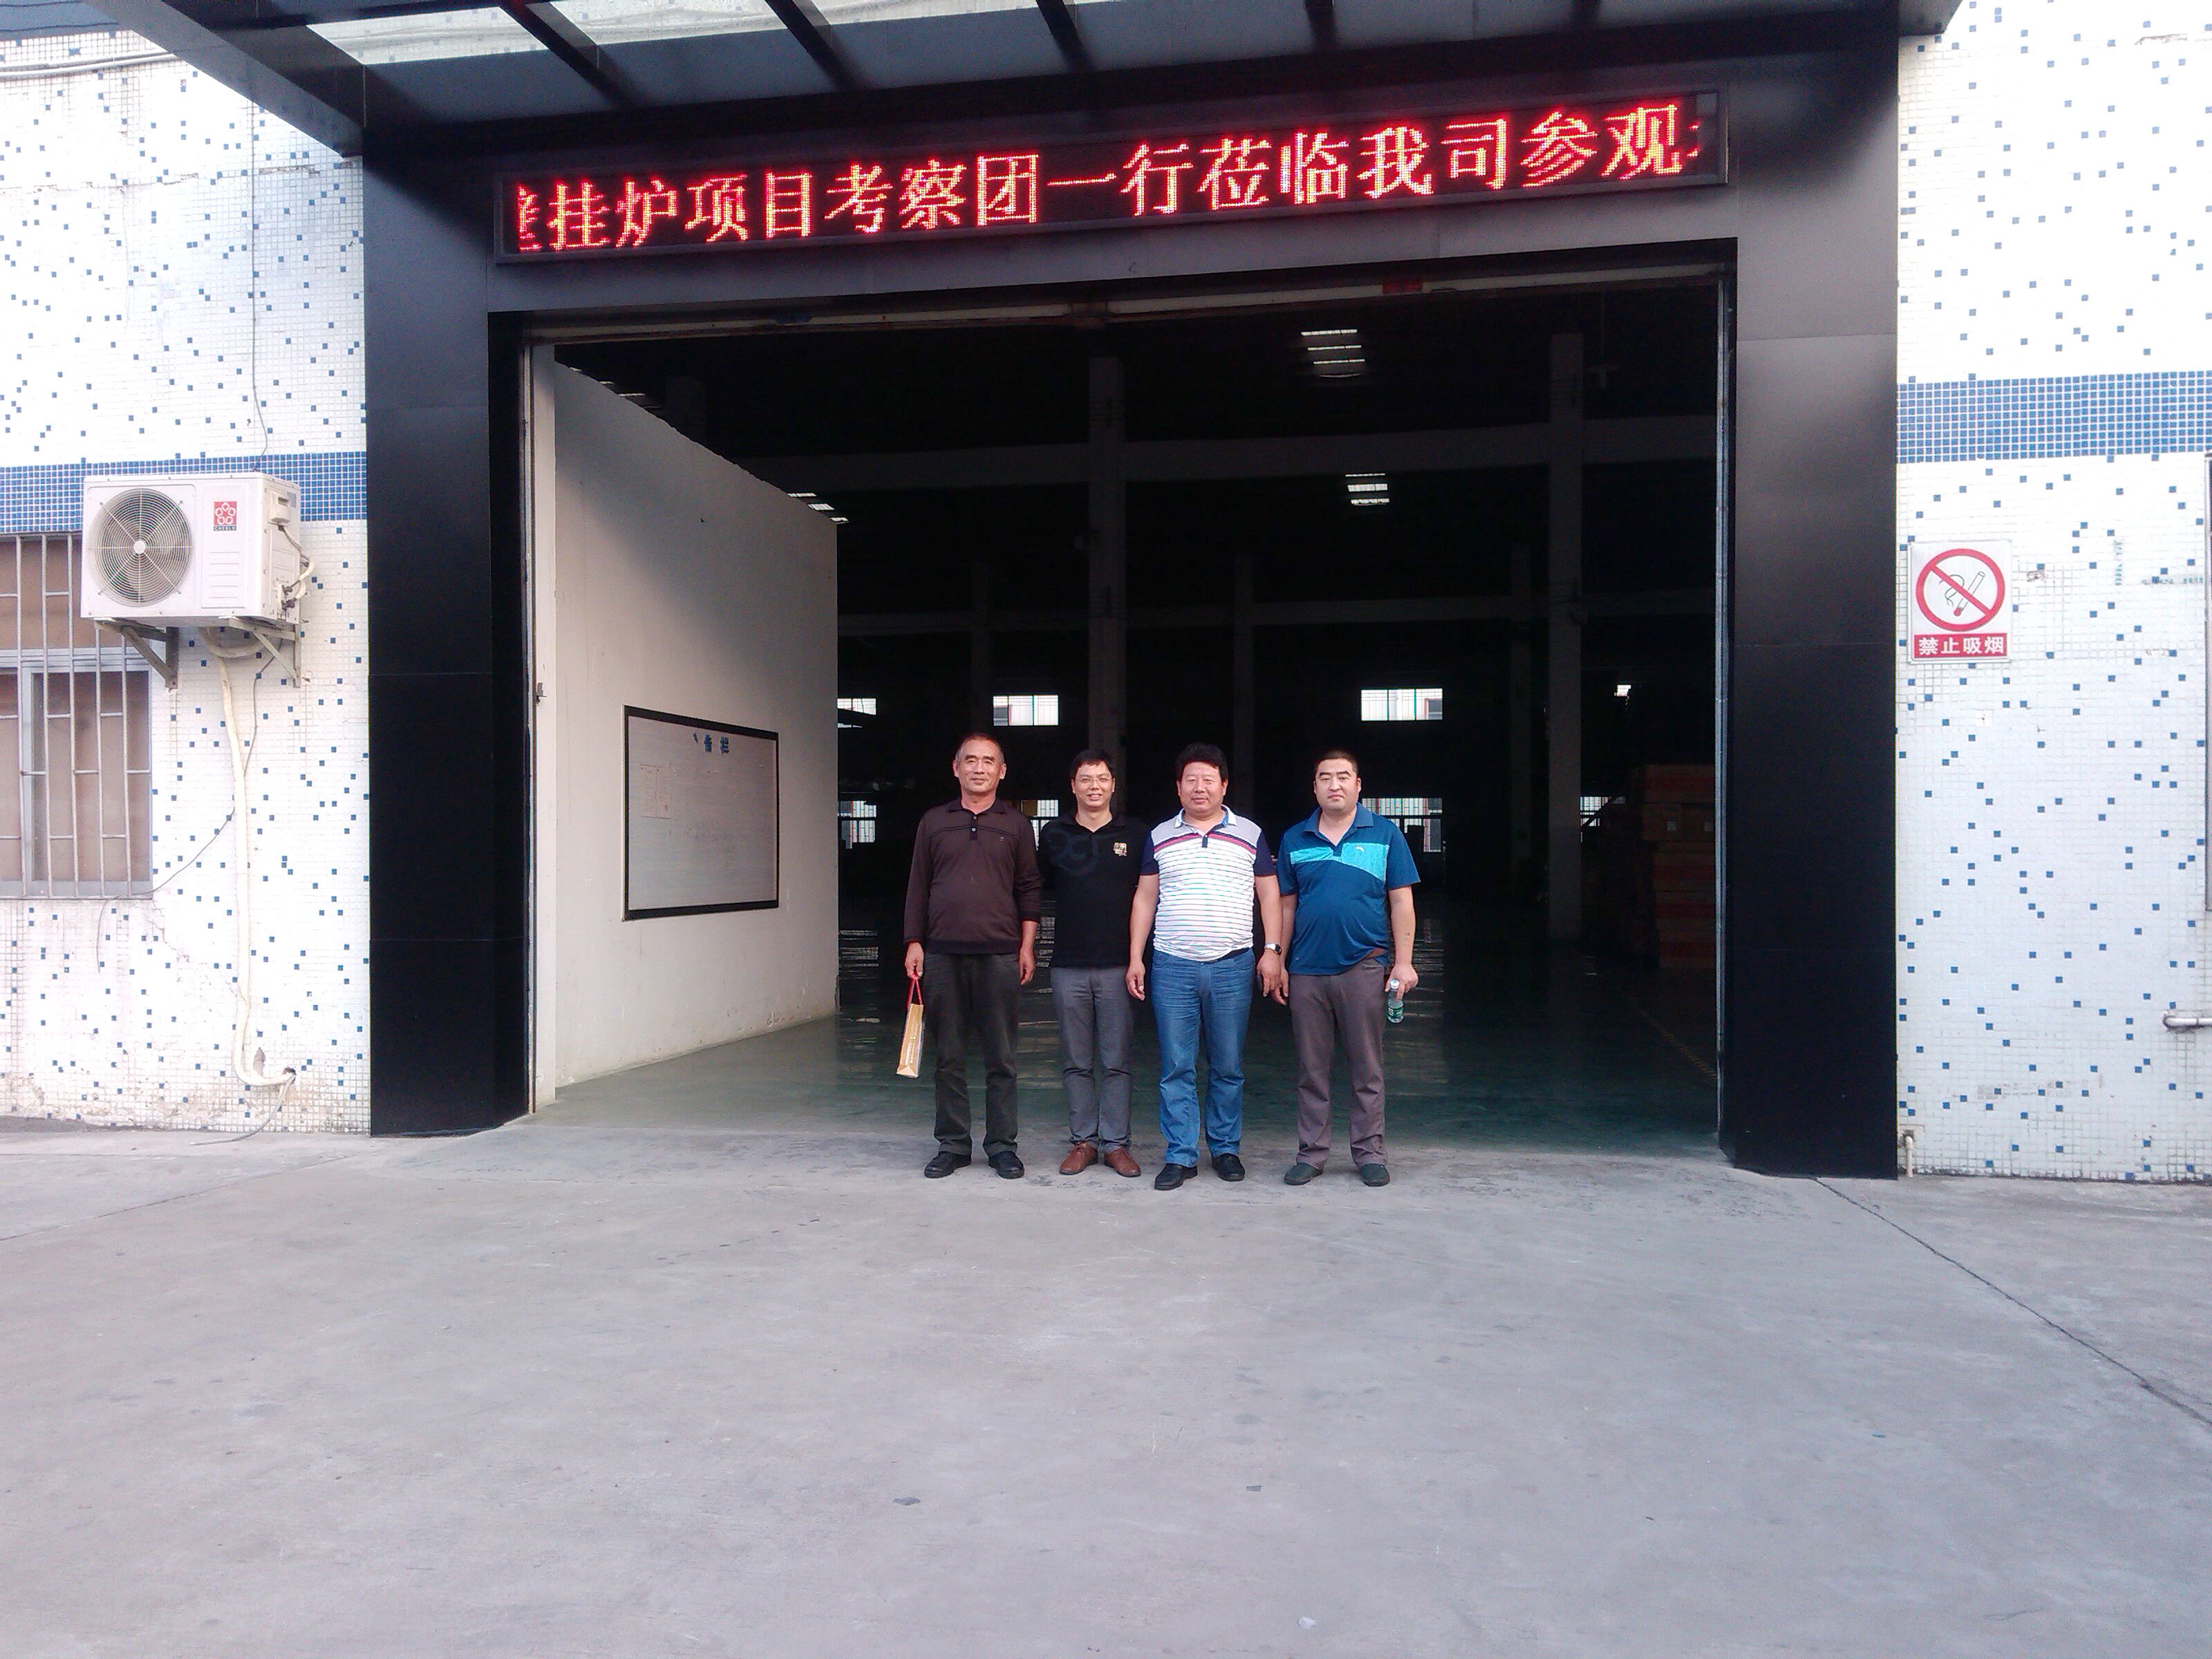 河北保定市壁挂炉工程考察团到访广东瑞马11